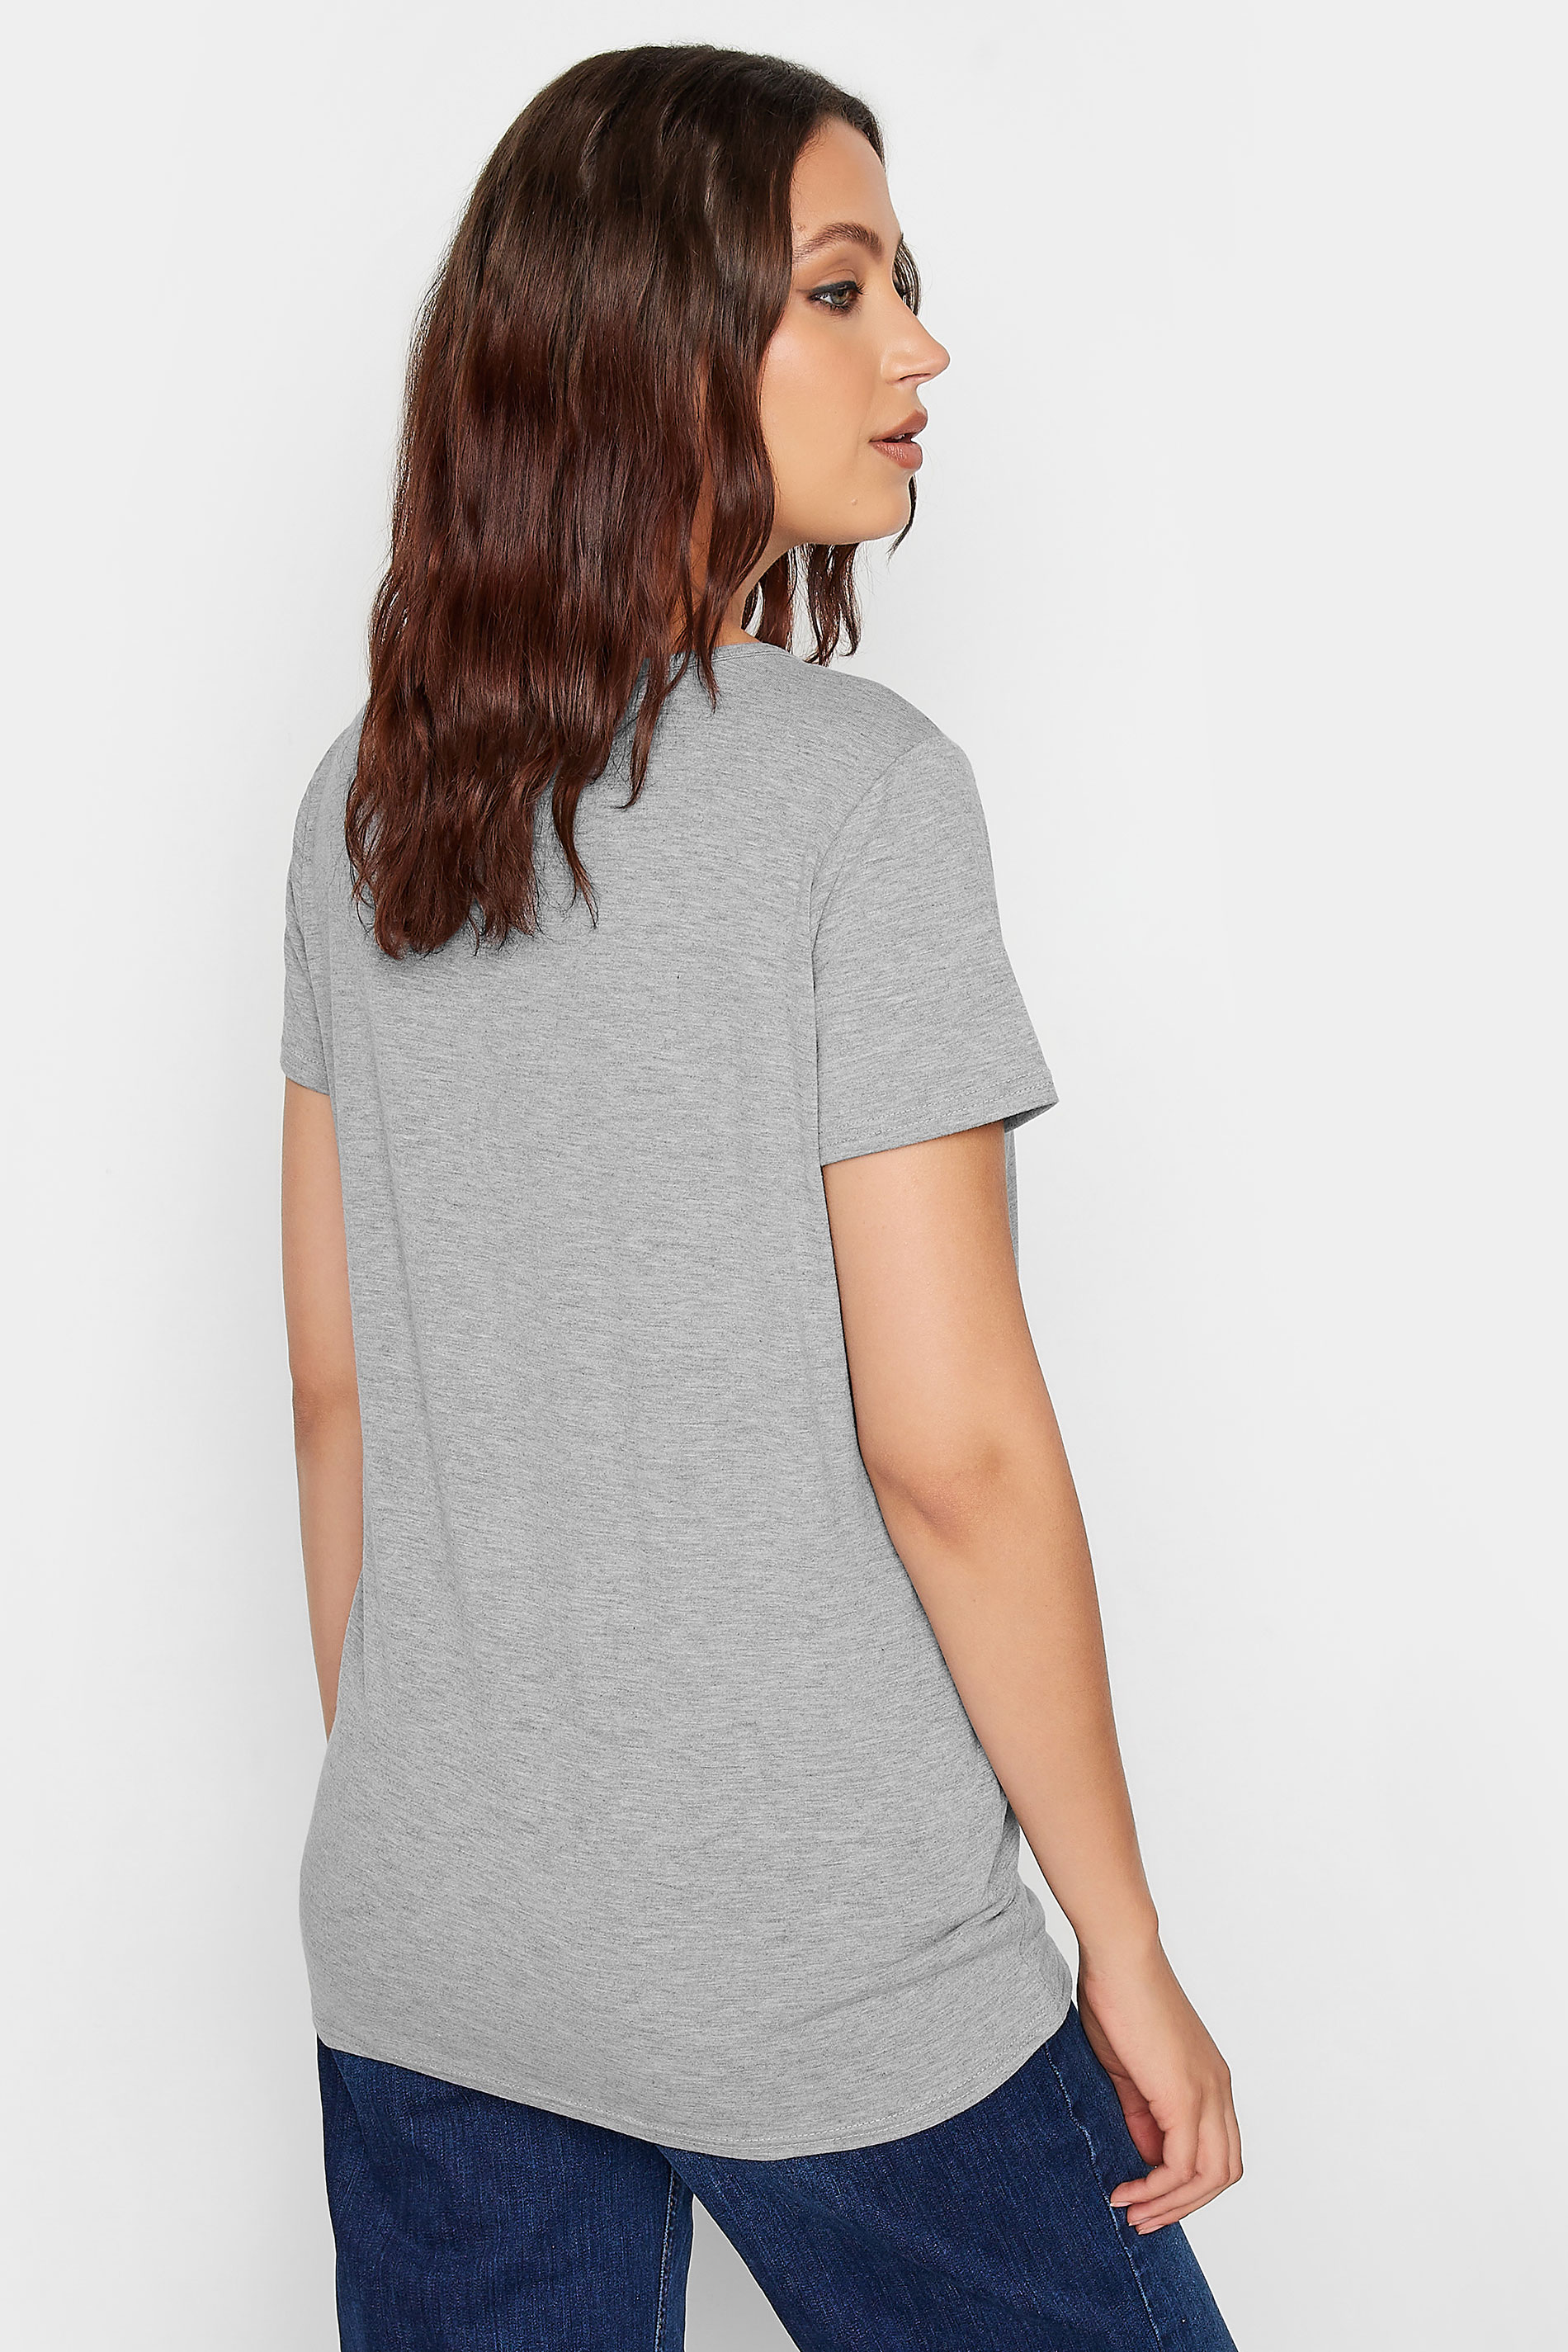 LTS Tall Women's Light Grey V-Neck T-Shirt | Long Tall Sally 3